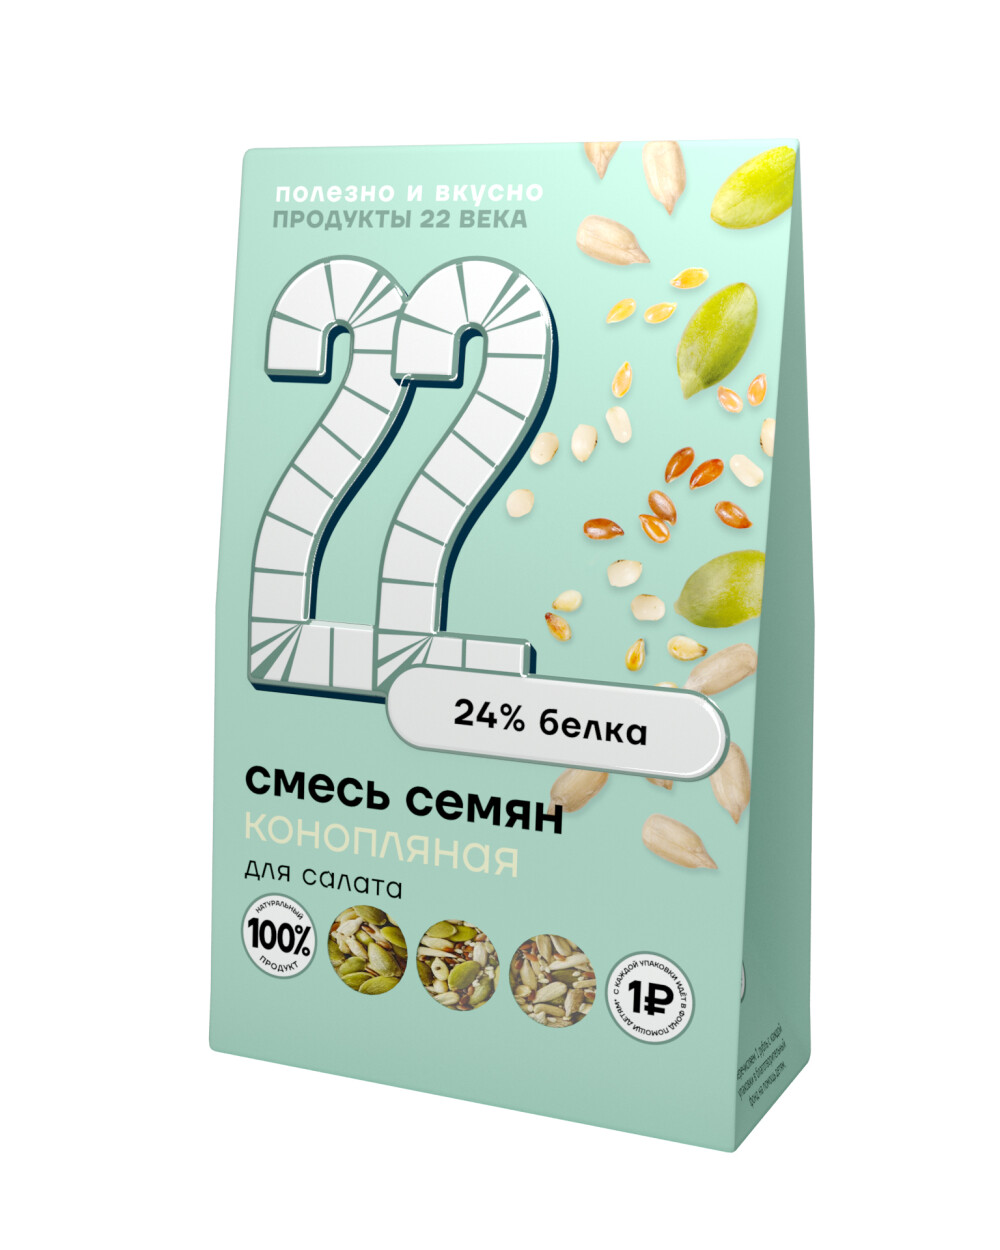 Product 22 ru. Смесь семян для салатов. Семена конопли для салата. Семечки смесь. Смесь семян для салатов купить.